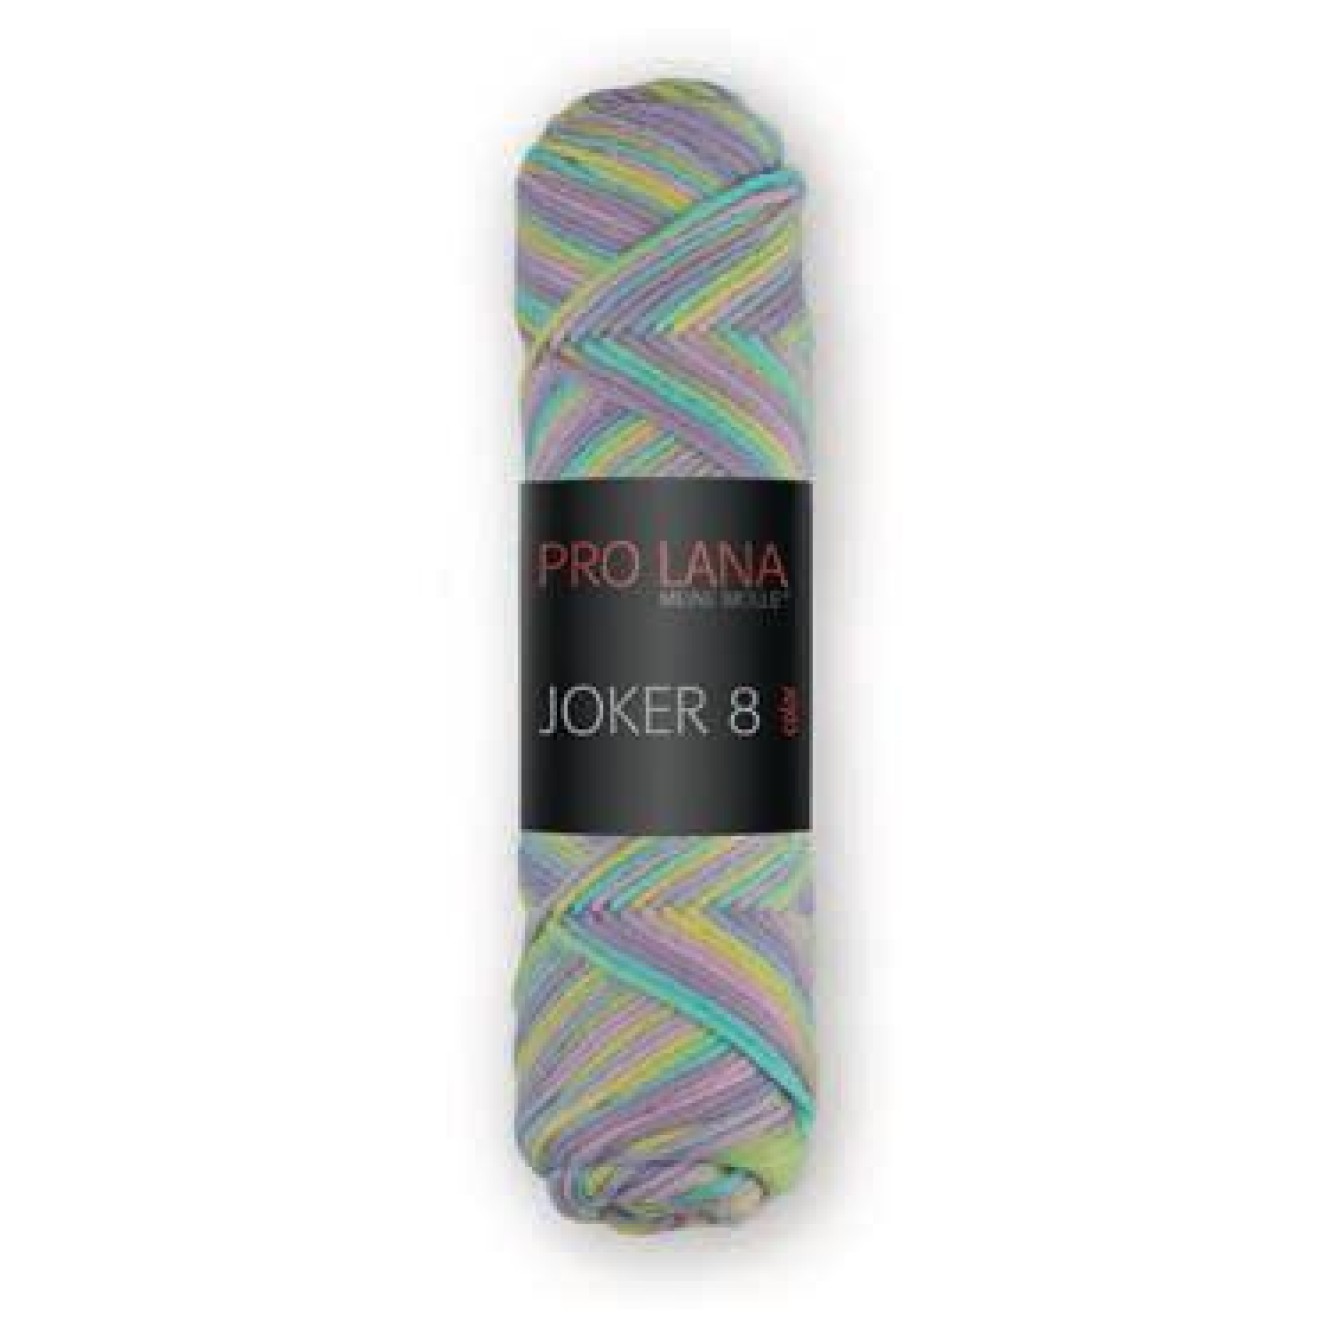 Joker 8 fach color 50 g